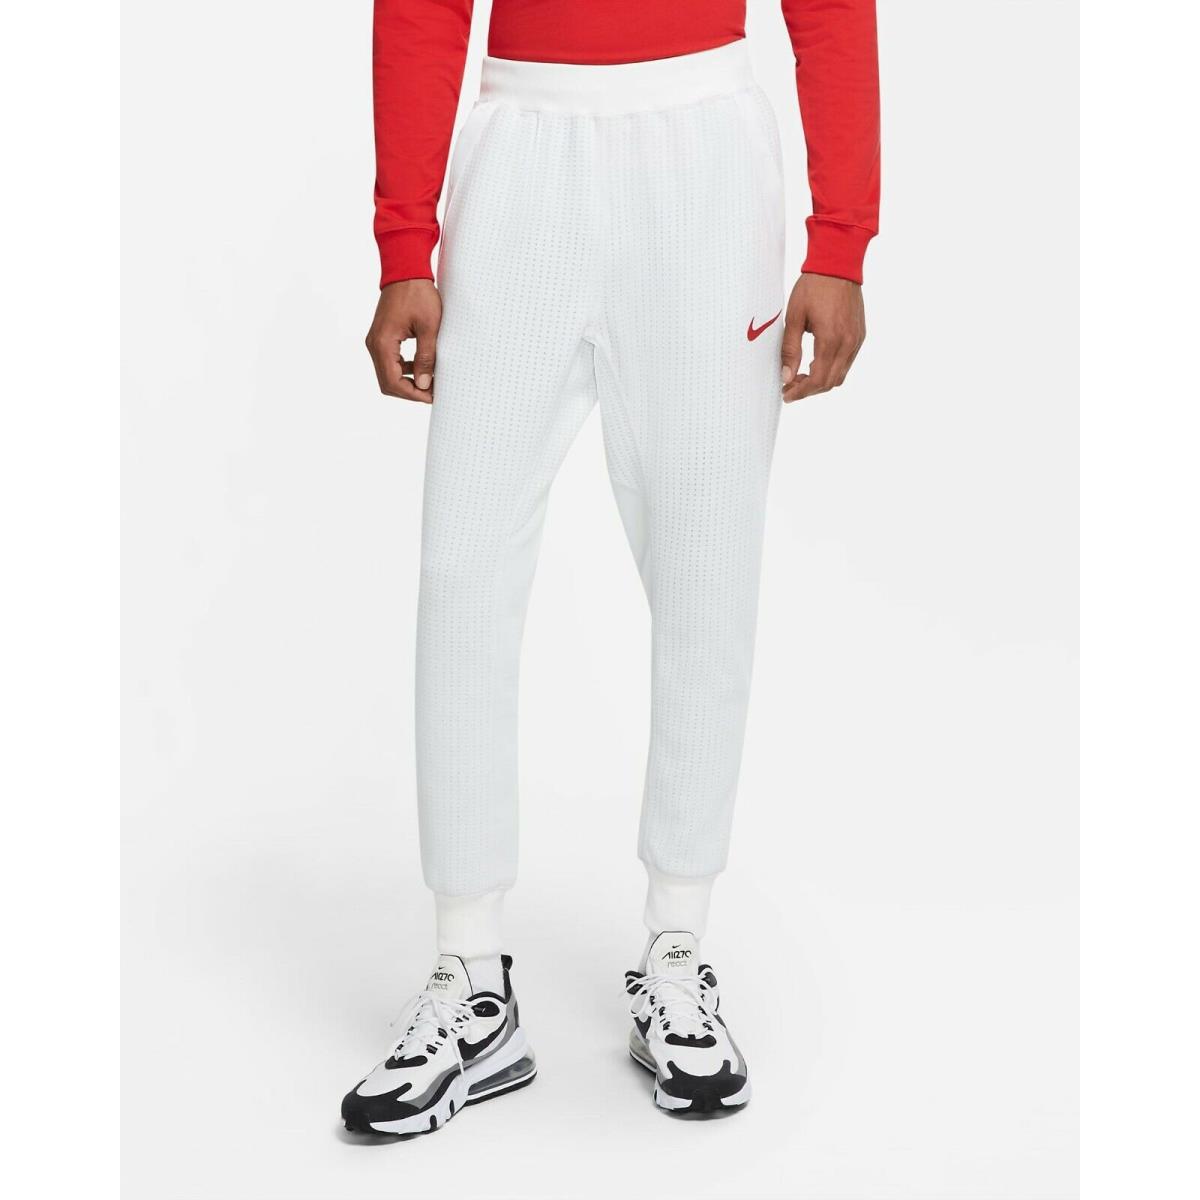 Nike Team Usa Sportswear Tech Fleece Men`s Size XL White Red Pants CW0302-100